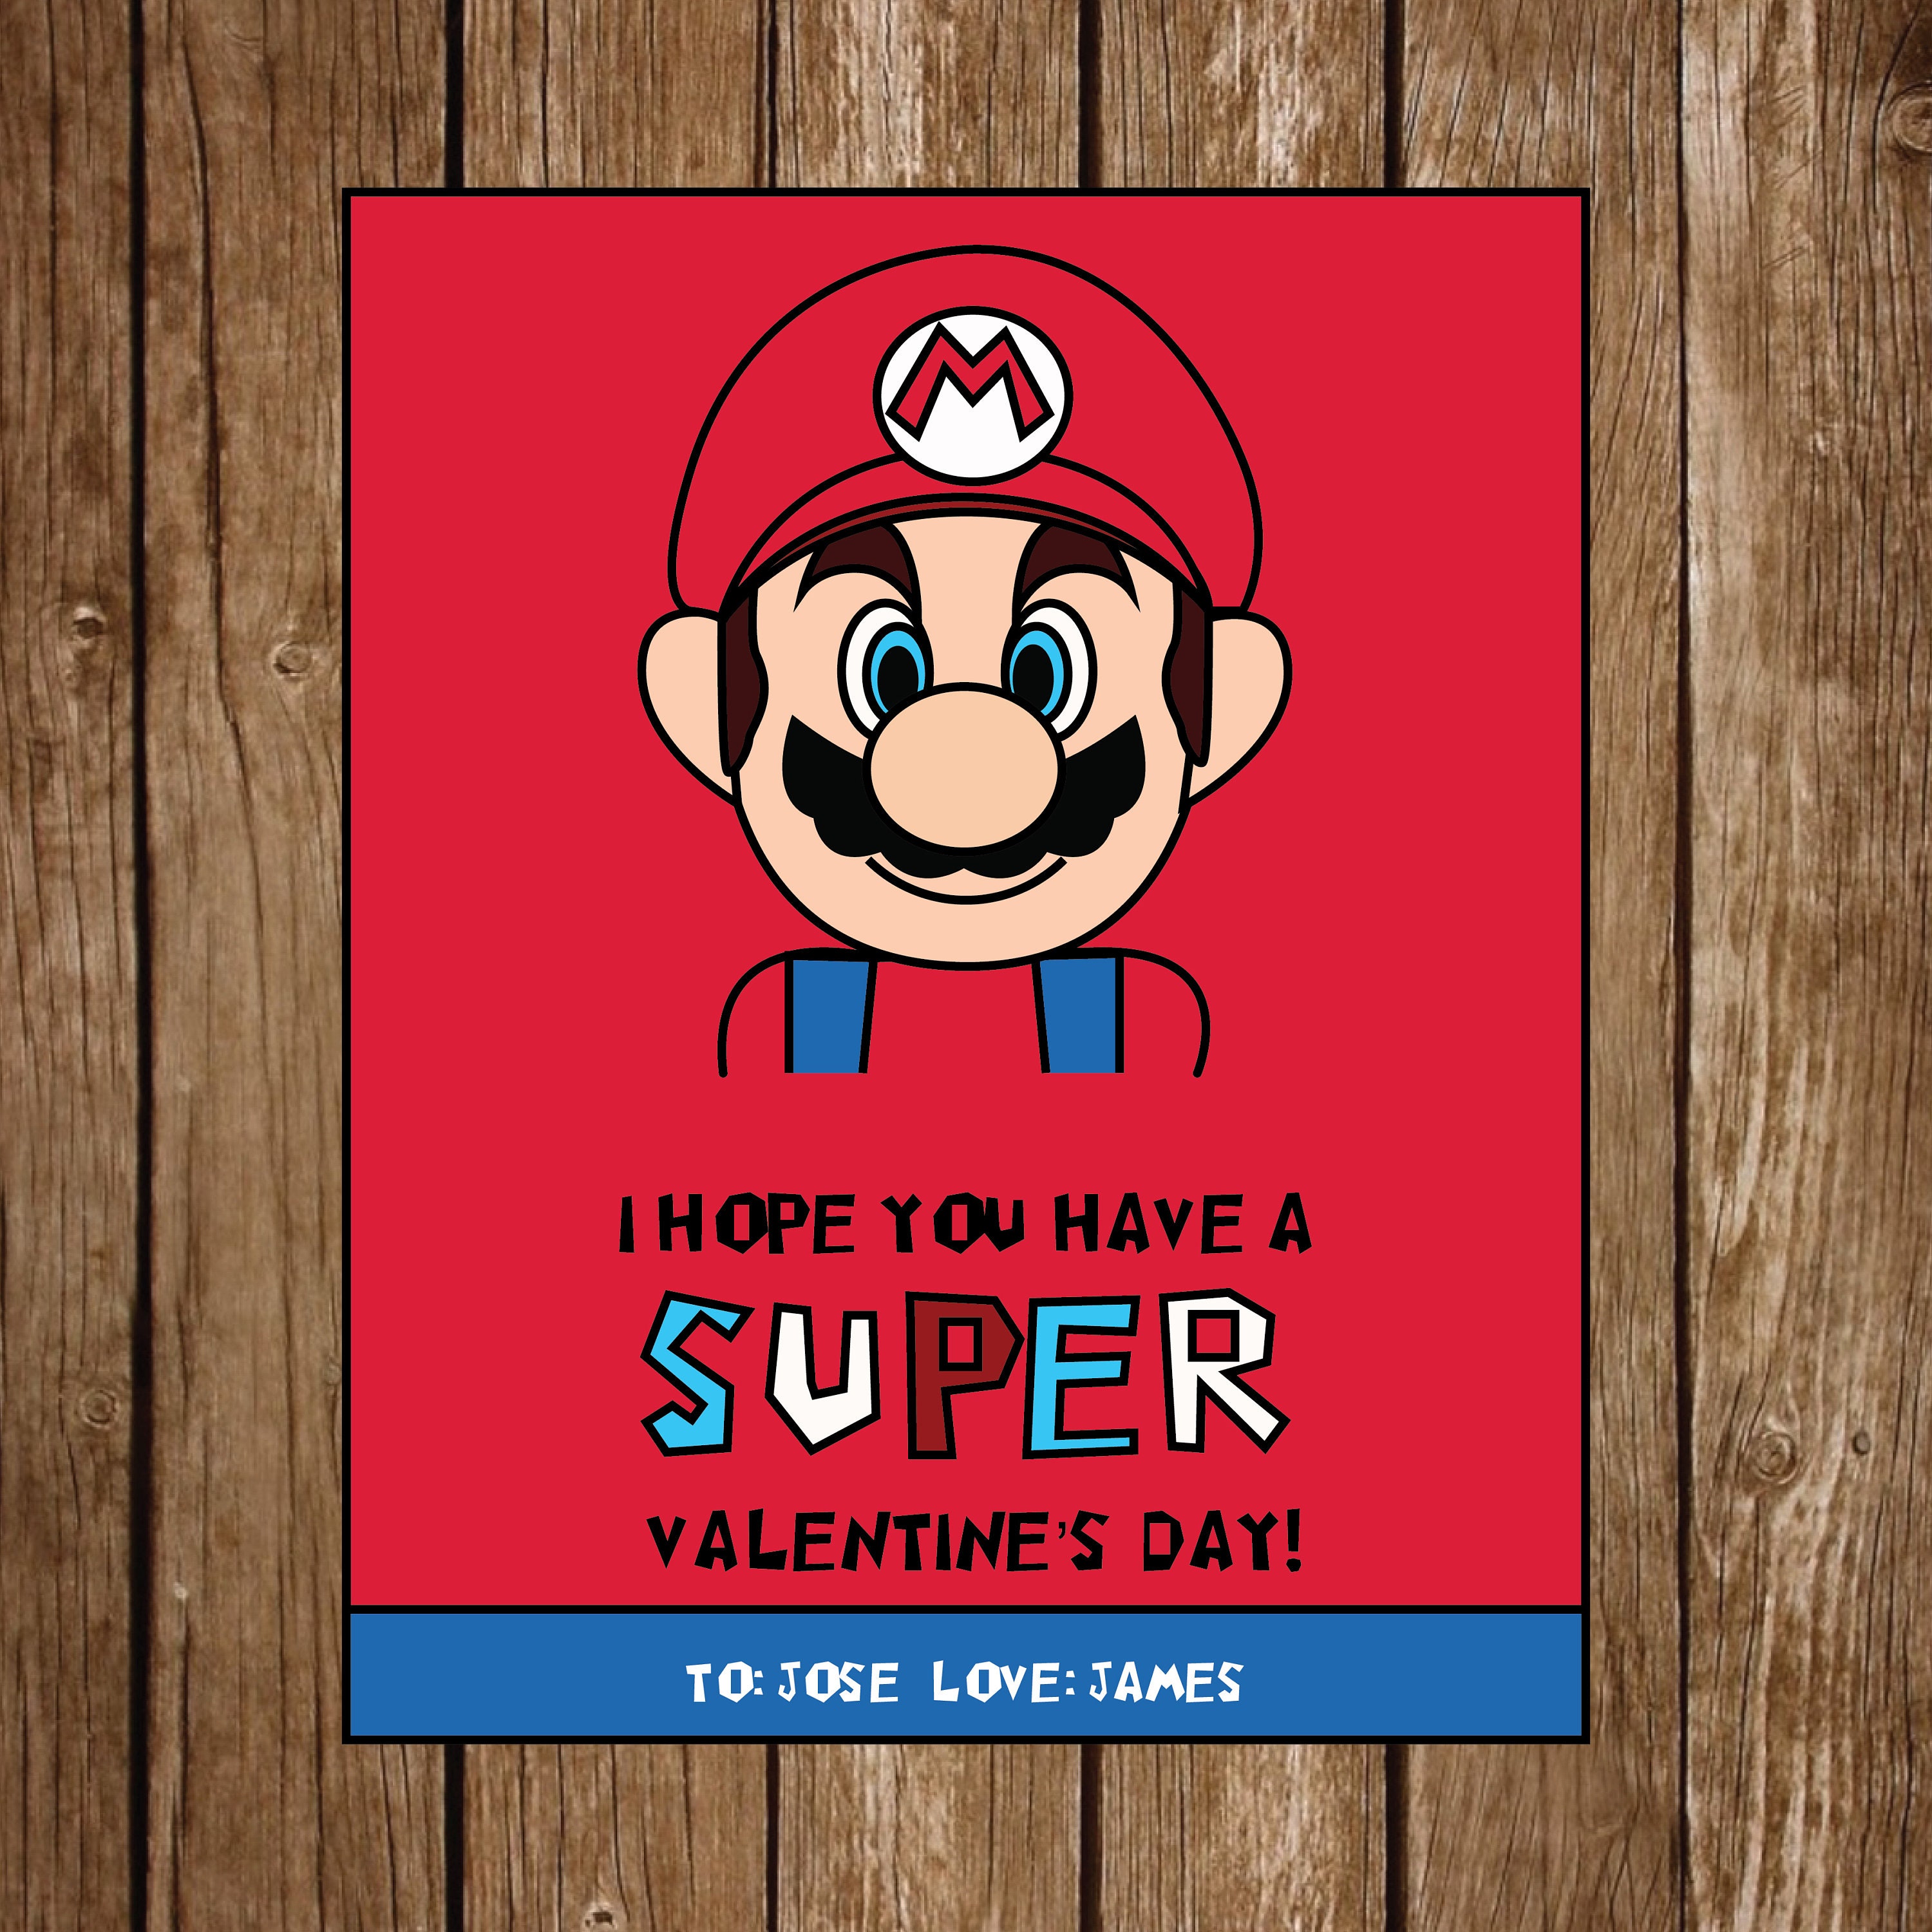 Mario Valentine's Day Cards Super Mario Mario Party | Etsy